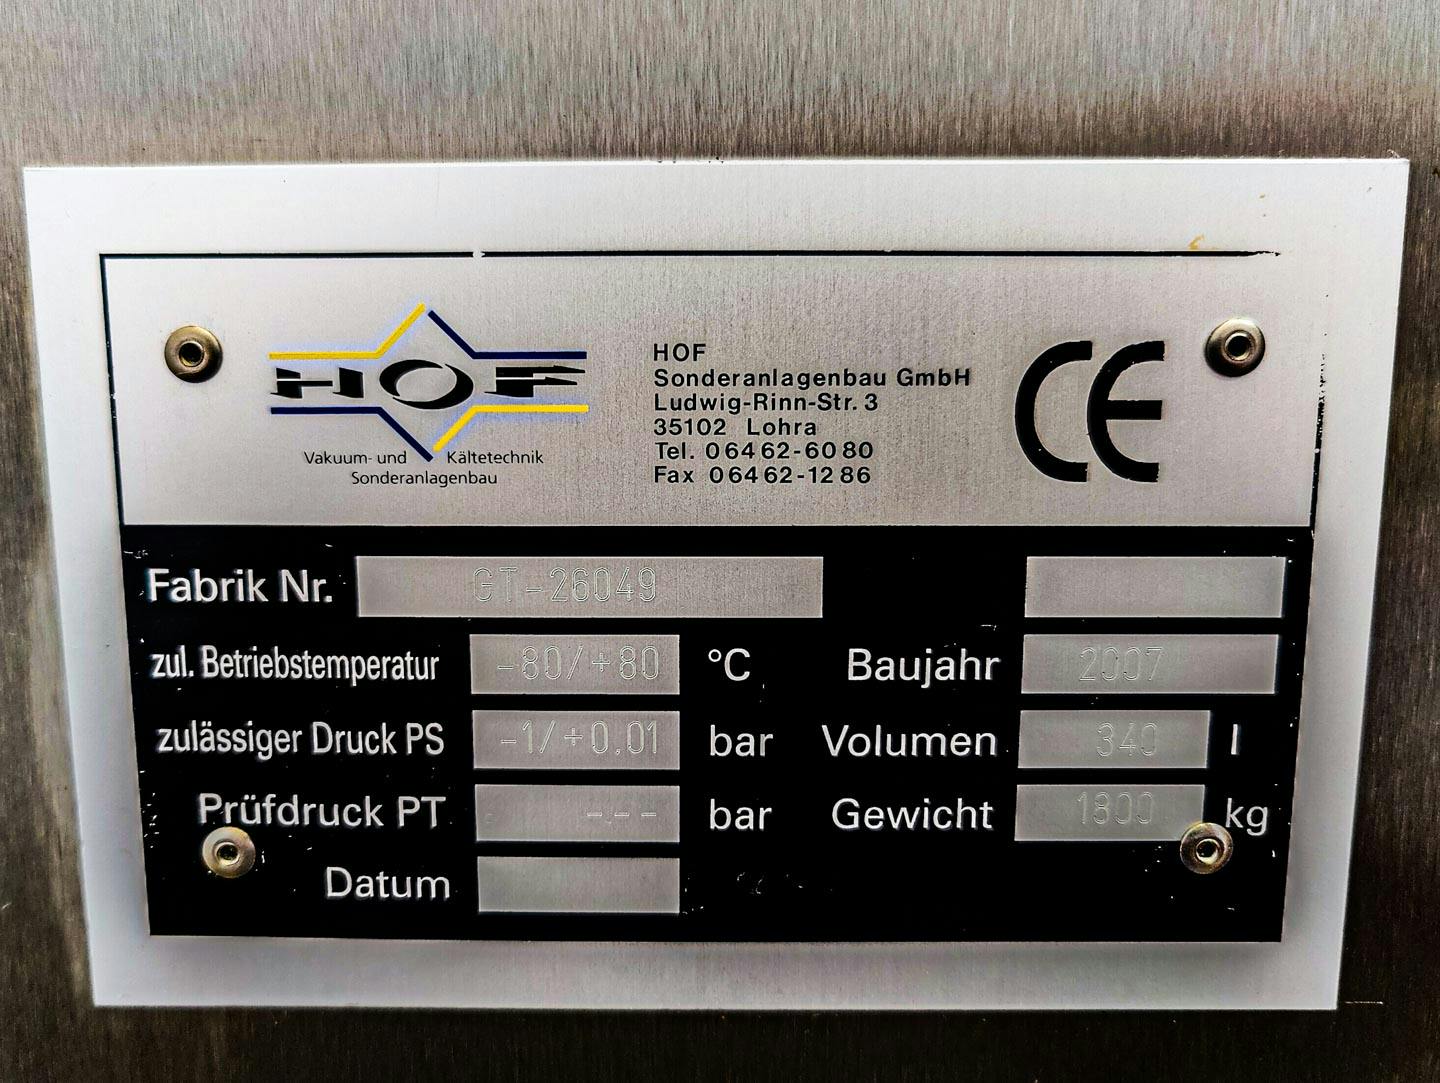 Hof Vakuum- und Kaltetechnik vacuum dryer - Gefriertrockner - image 8